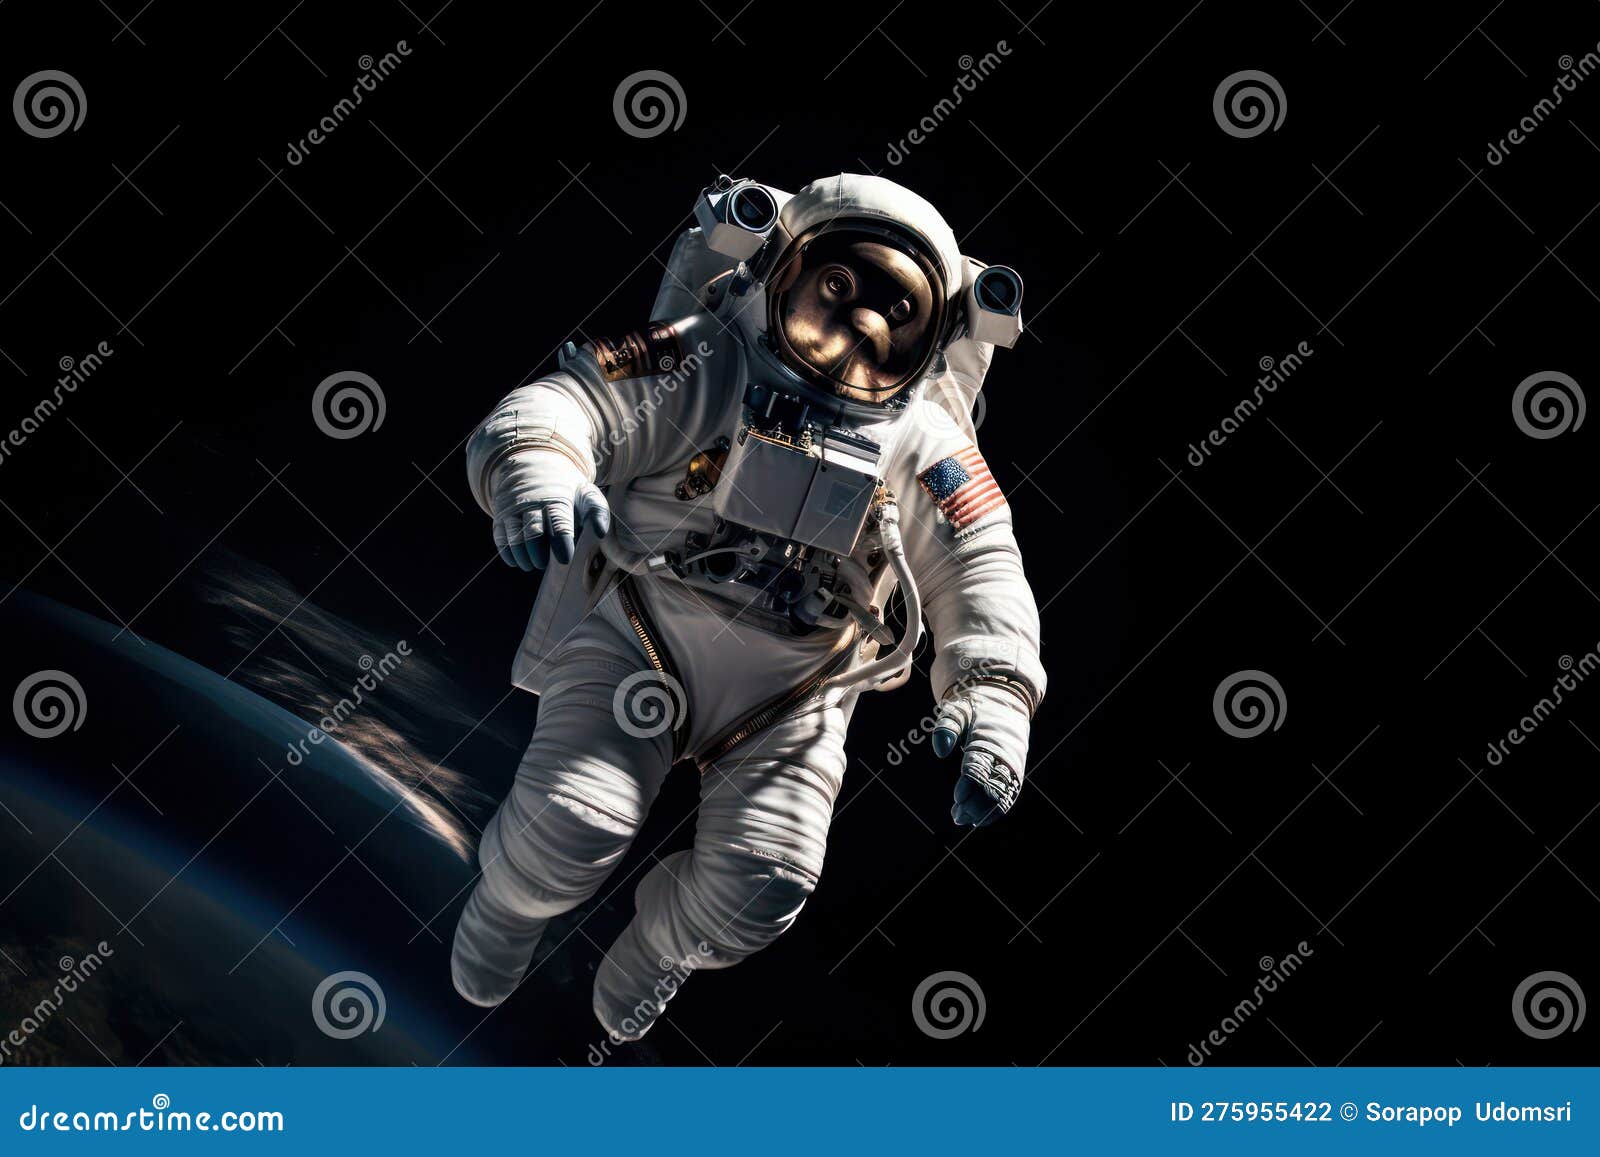 Mono Astronauta Con Traje Espacial Y Casco Listo Para Despegar En Un Cohete  Stock de ilustración - Ilustración de galaxia, evolucionismo: 275955422